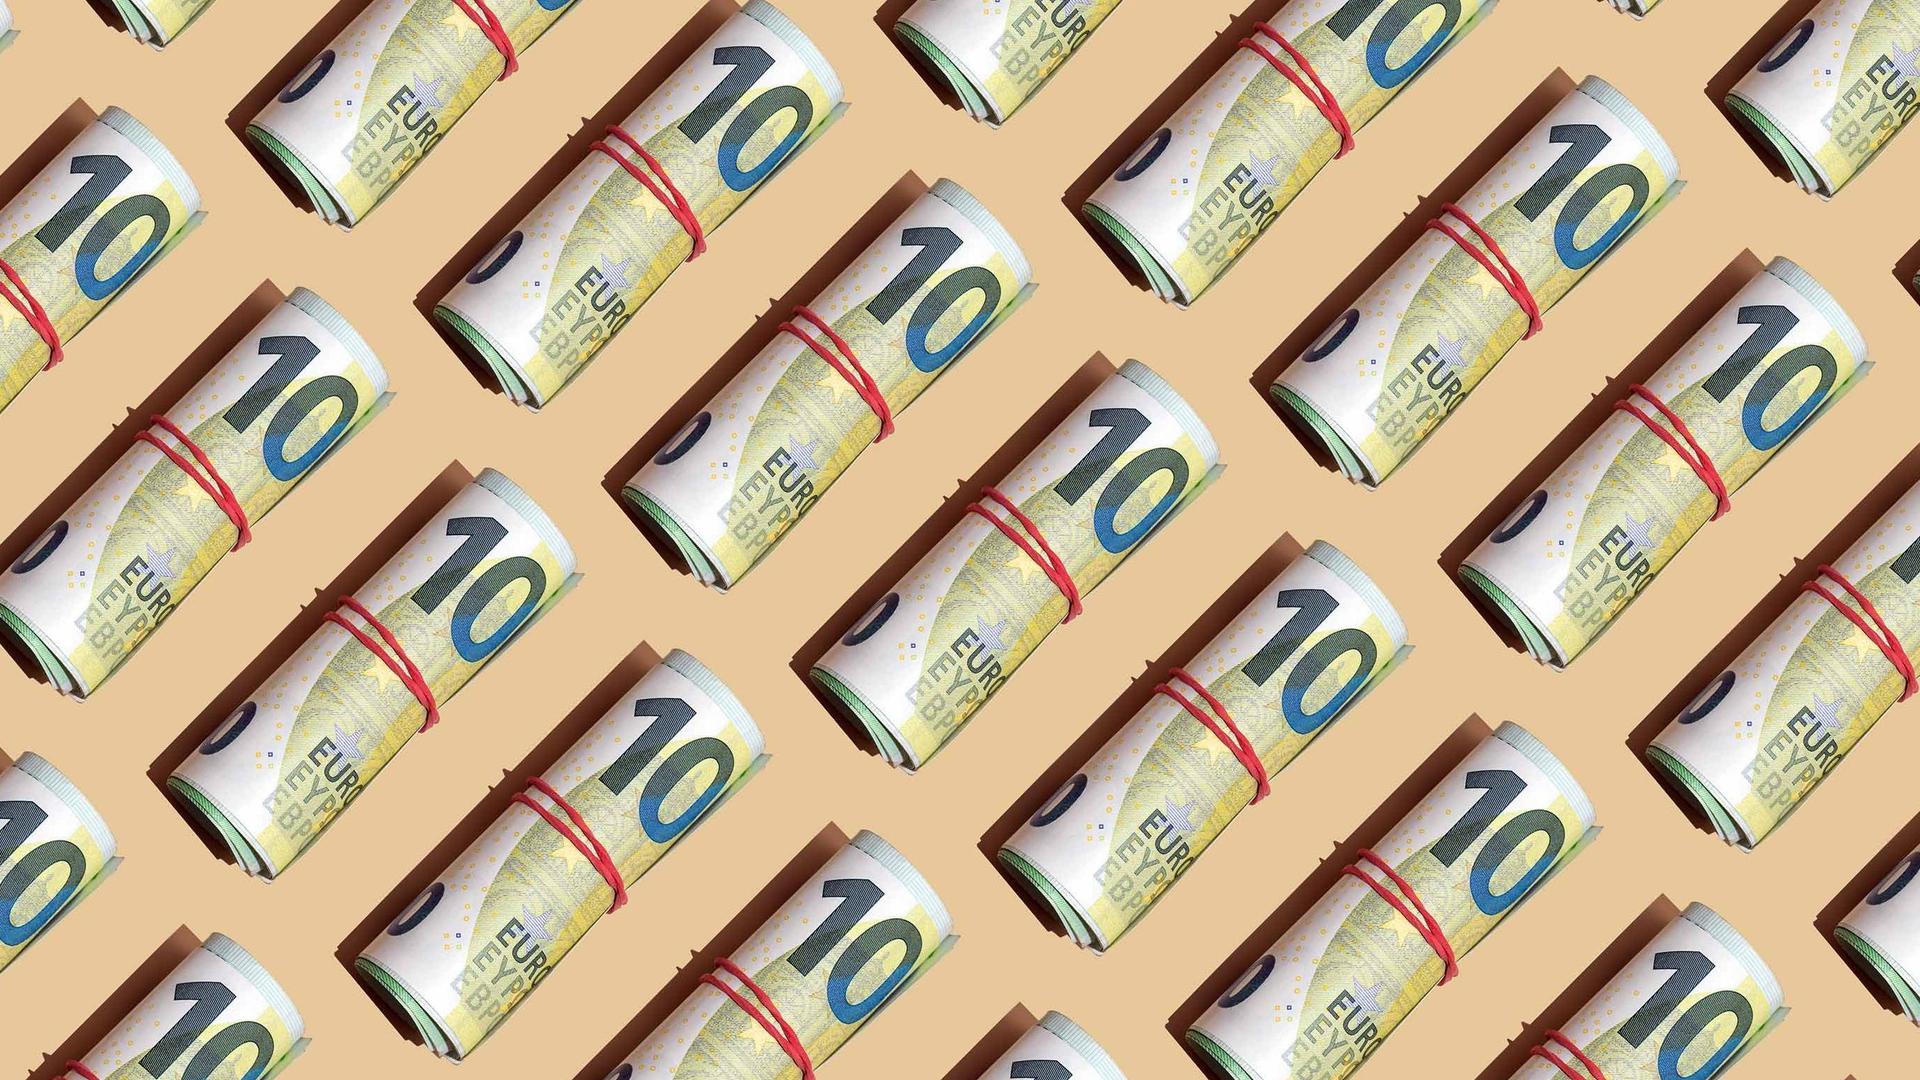 Ein grafisches Bild mit vielen 100 Euro Banknoten mit roten Gummibändern zu Geldbündeln zusammengerollt. Sie liegen aneinandergereiht mit gleichen Abständen auf einem gelben Untergrund.